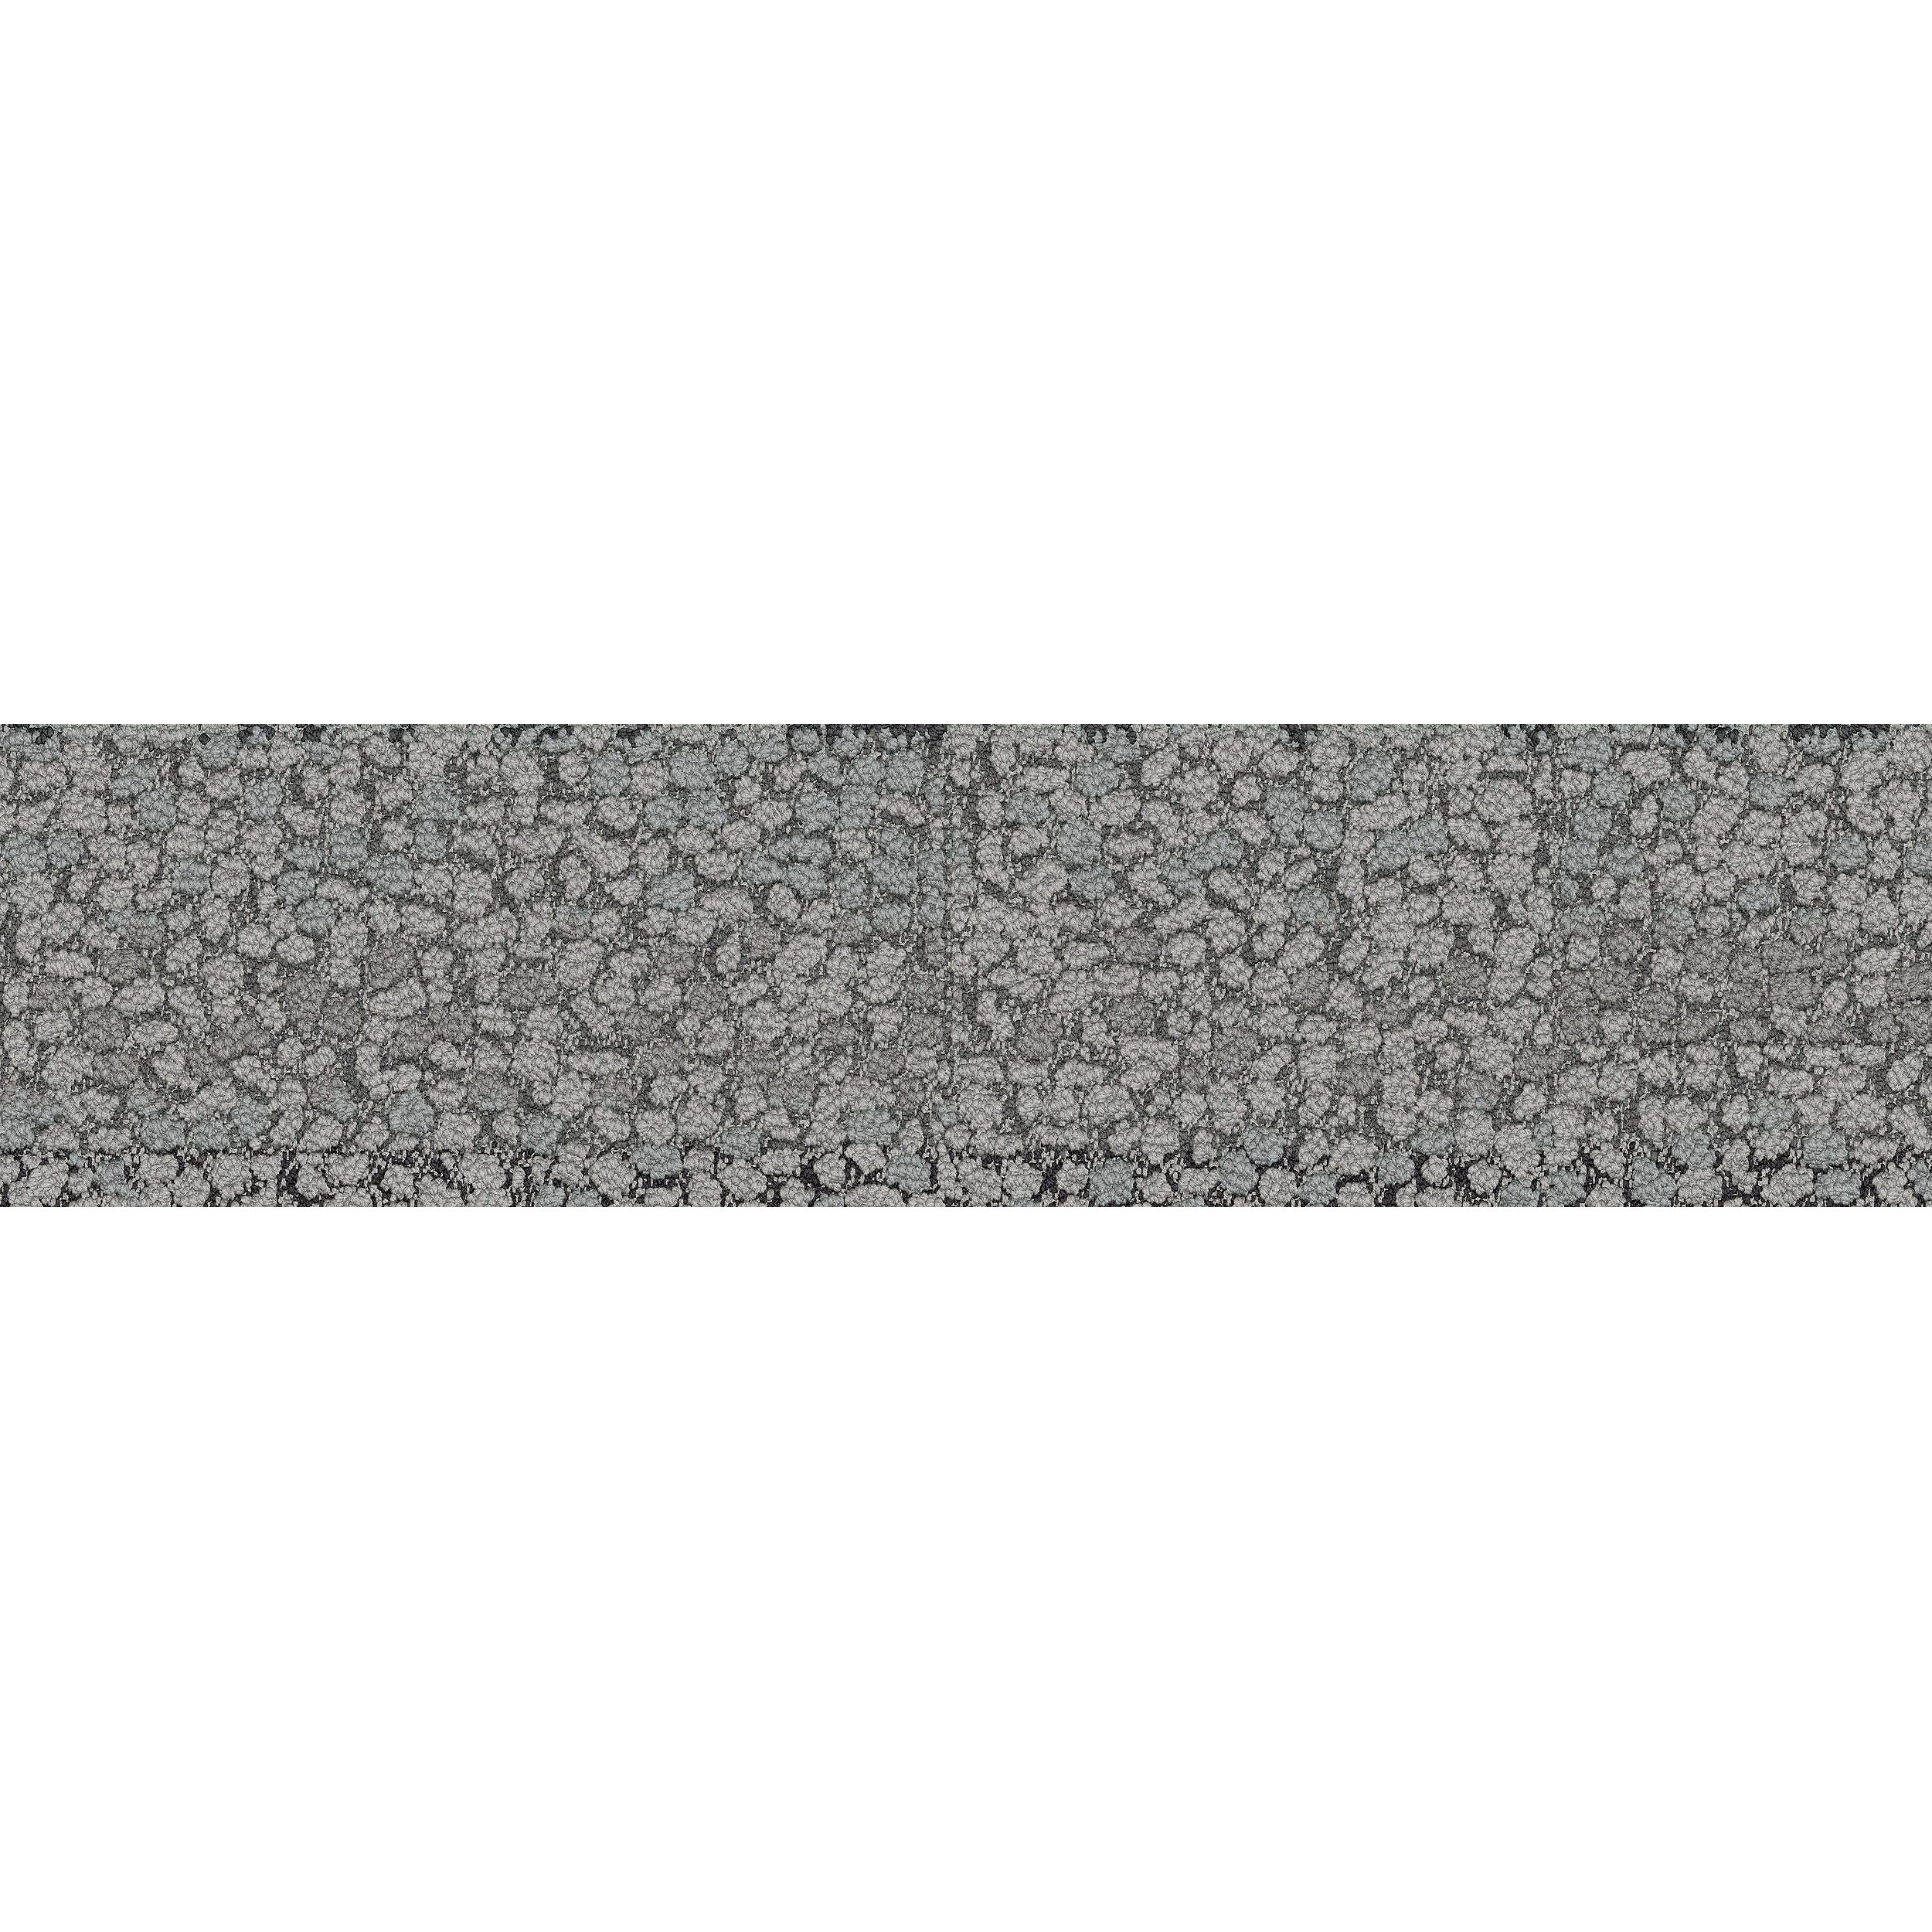 HN840 Carpet Tile In Limestone afbeeldingnummer 13